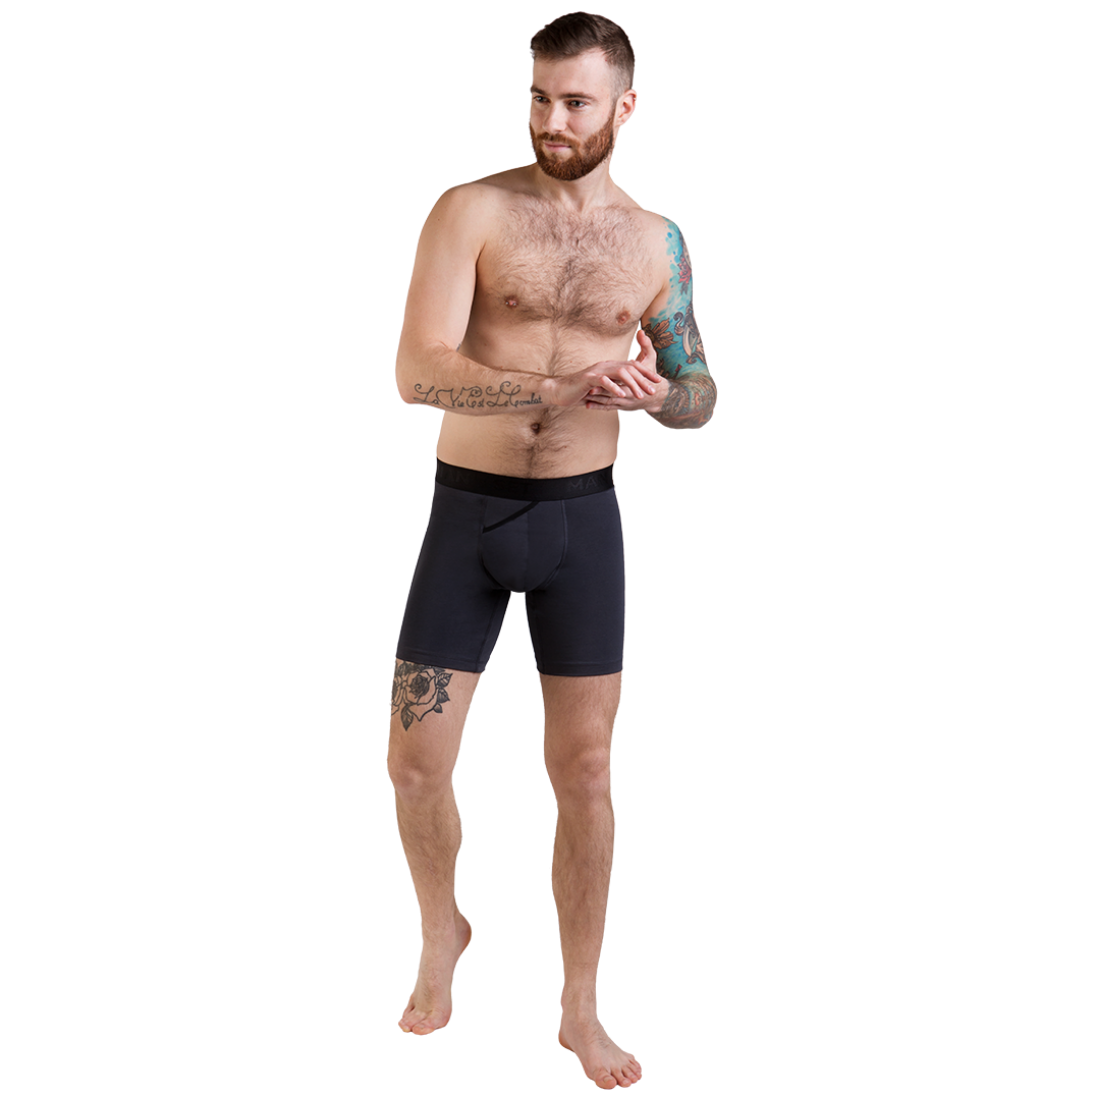 Мужские анатомические боксеры Anatomic Long 2.0 Black Series, графитовый из трикотажа 'жатка' MansSet - Фото 3